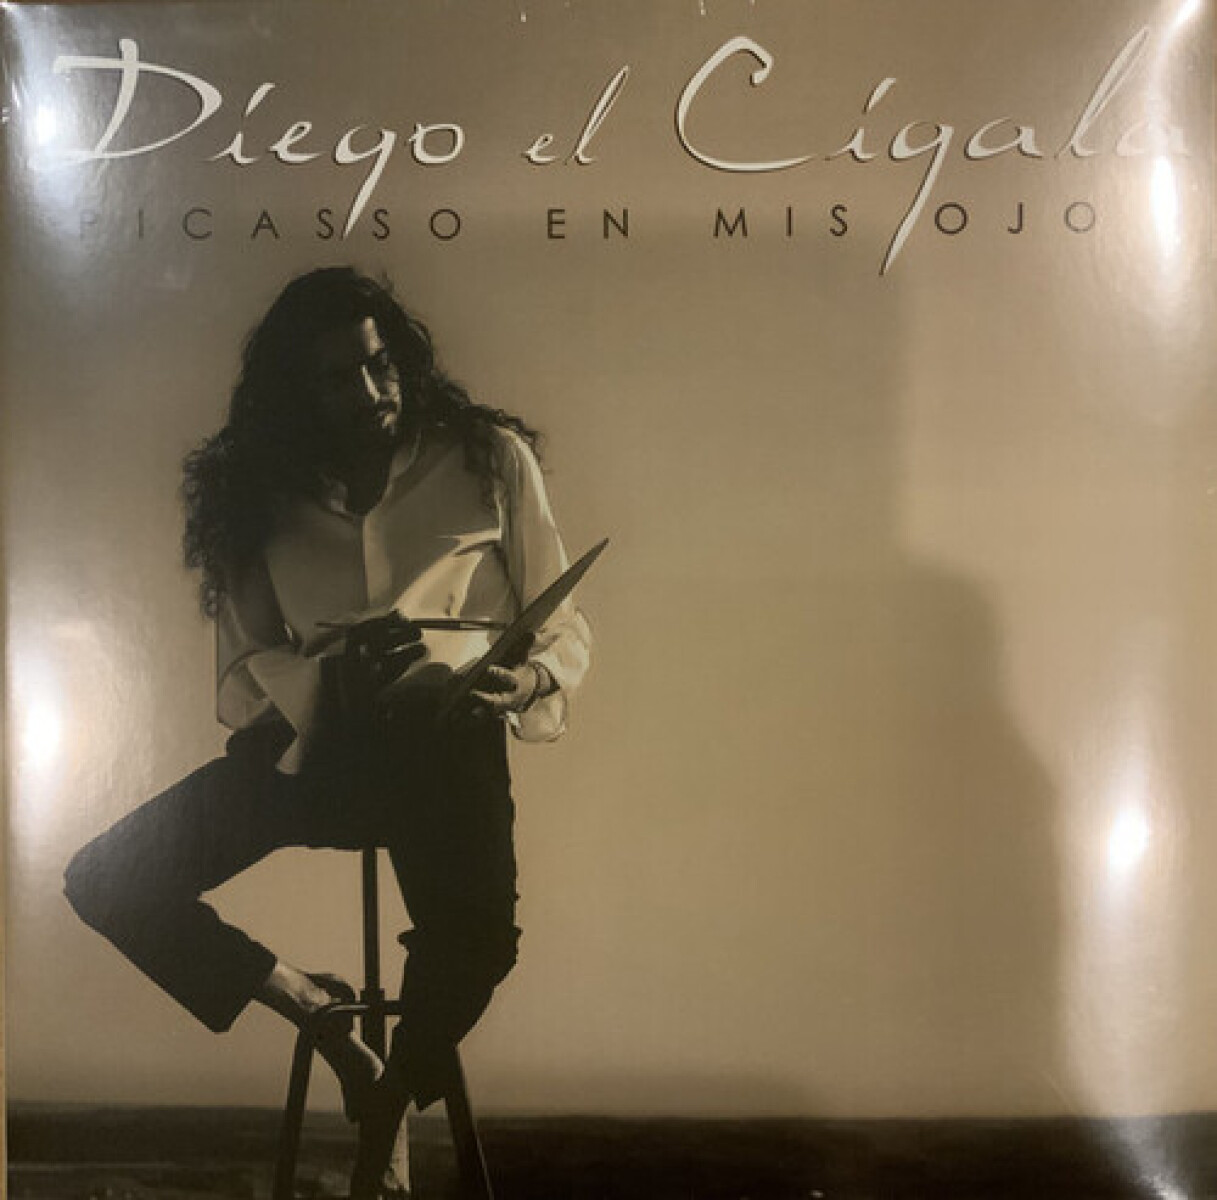 Diego El Cigala Picasso En Mis Ojos - Vinilo 